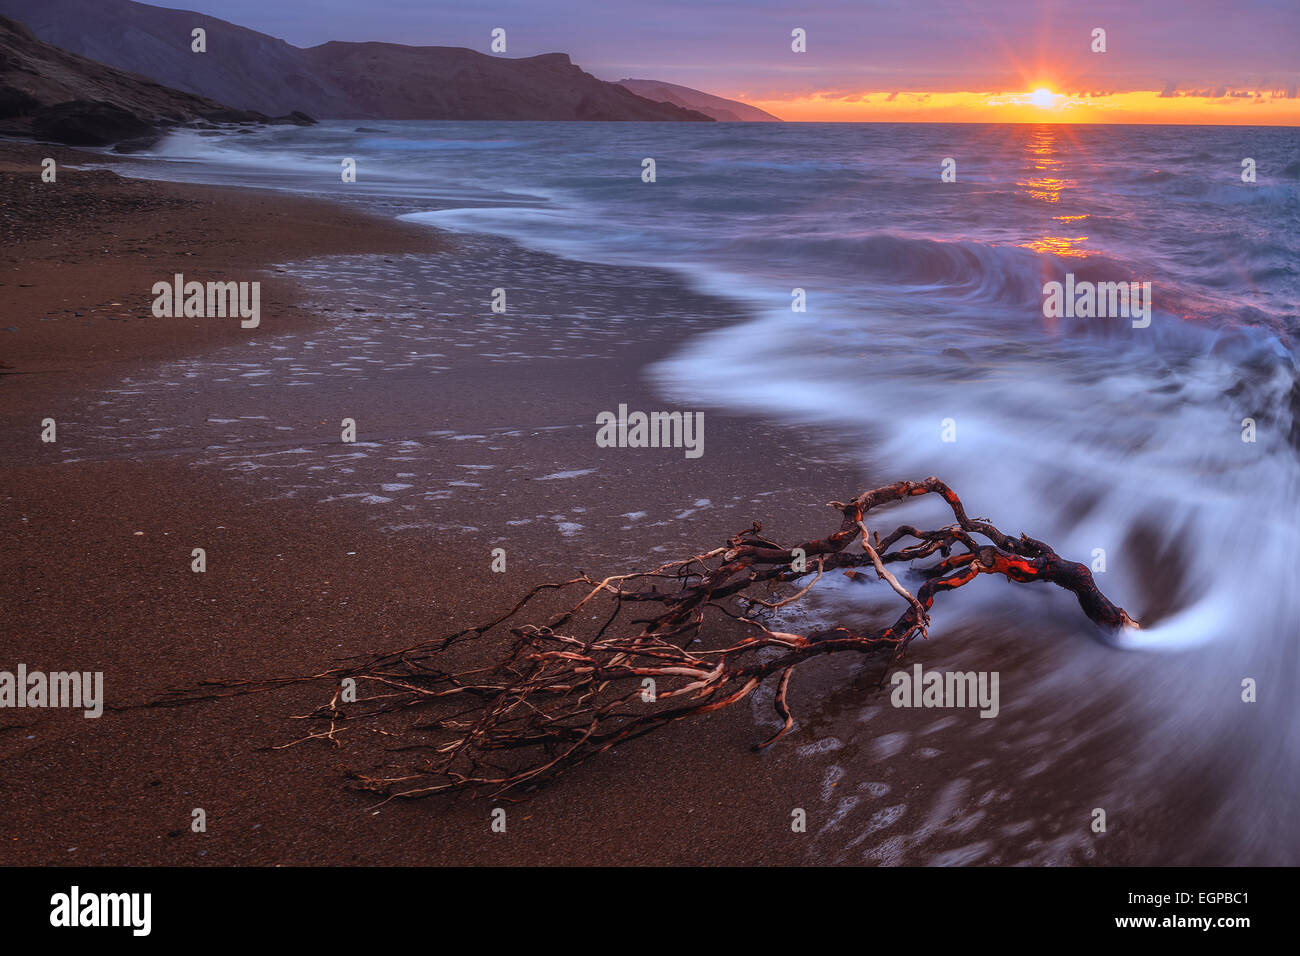 Sea beach on sunset time Stock Photo